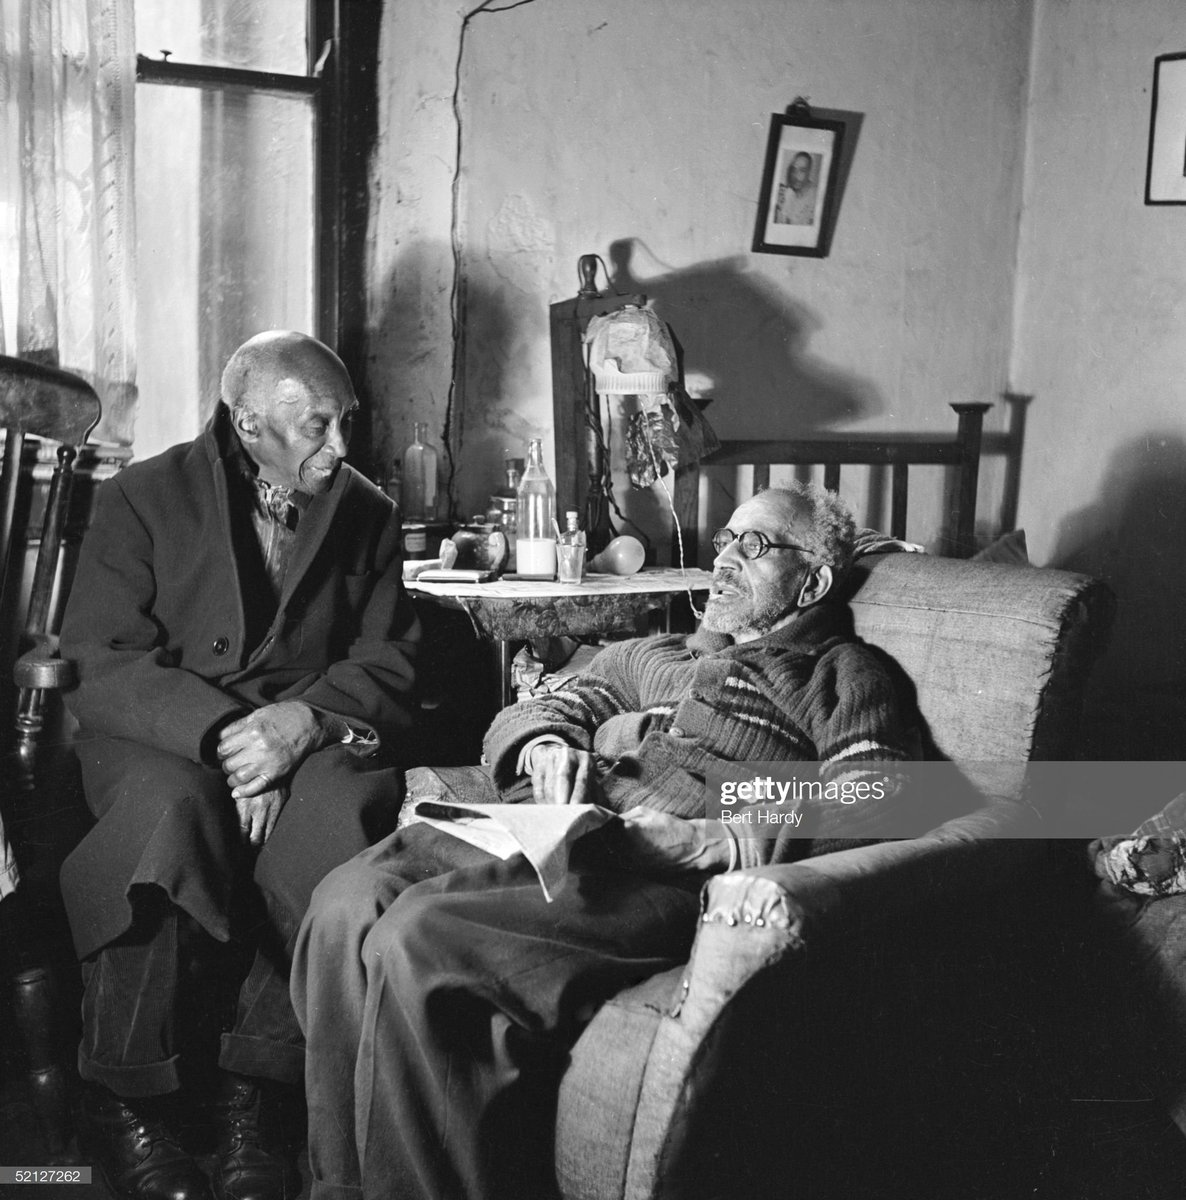 Two elderly gentlemen in Bute Town, Cardiff, 1950. Photo by Bert Hardy